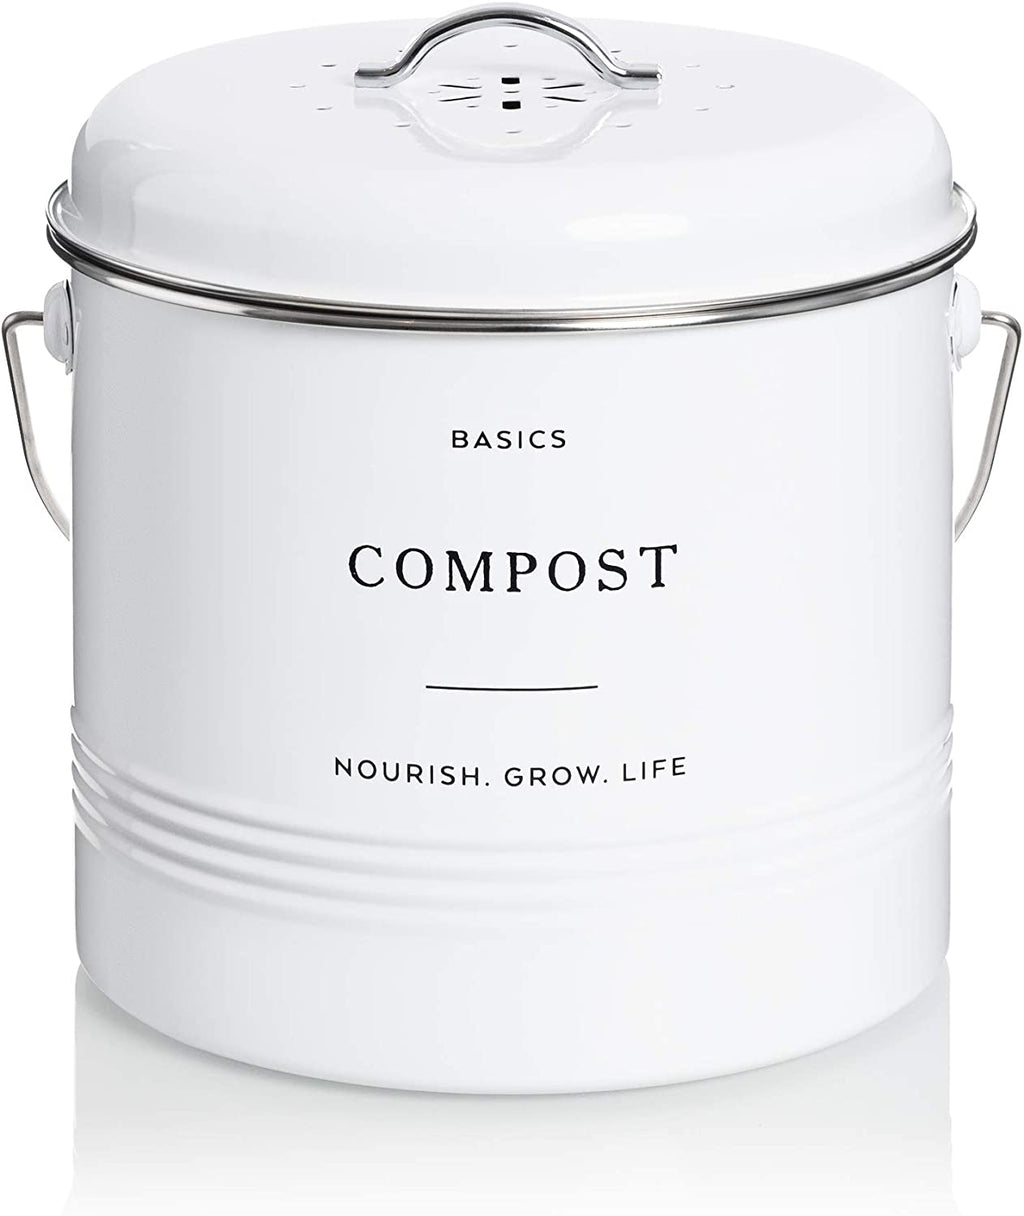 White Countertop Compost Bin